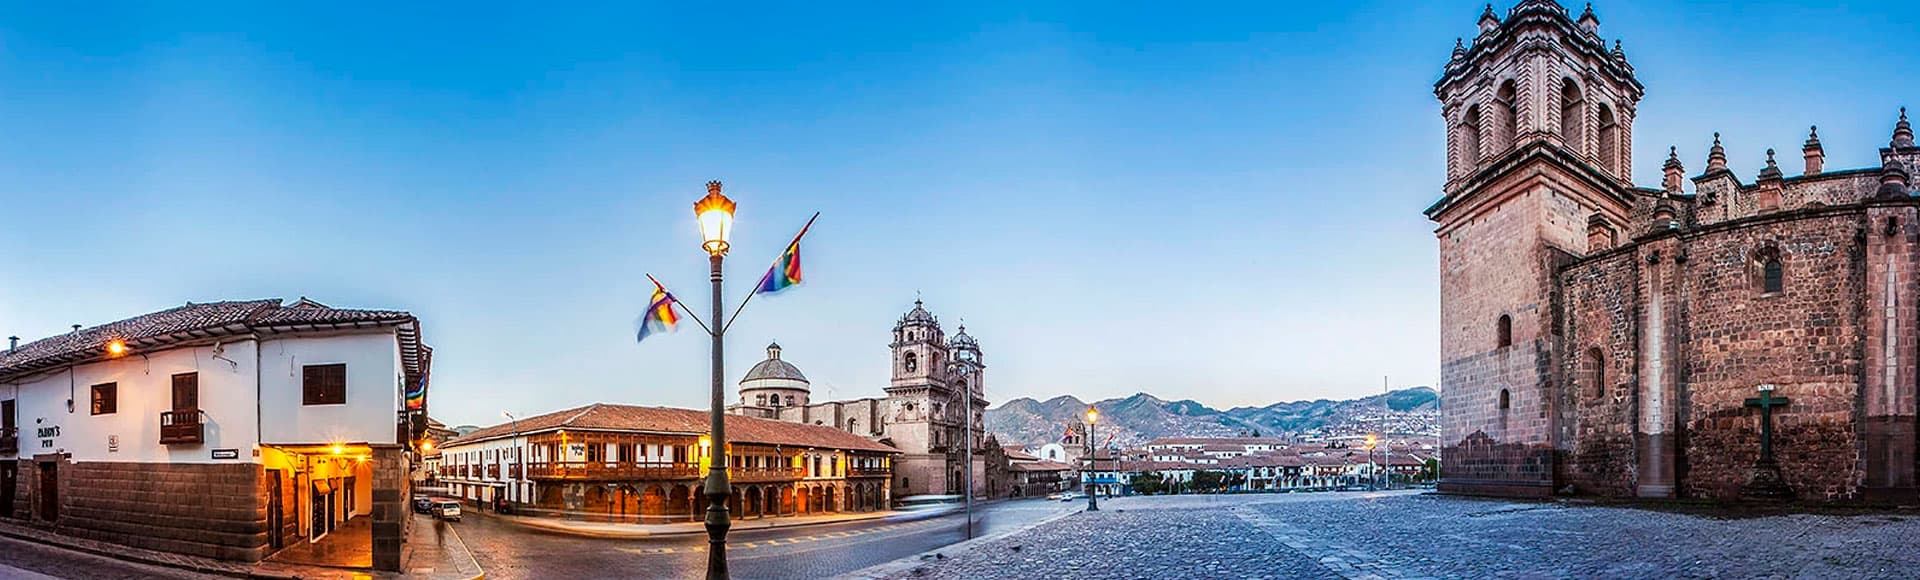 Tours Viajes Año Nuevo en Perú 2020 - 11 Días | ILE Tours